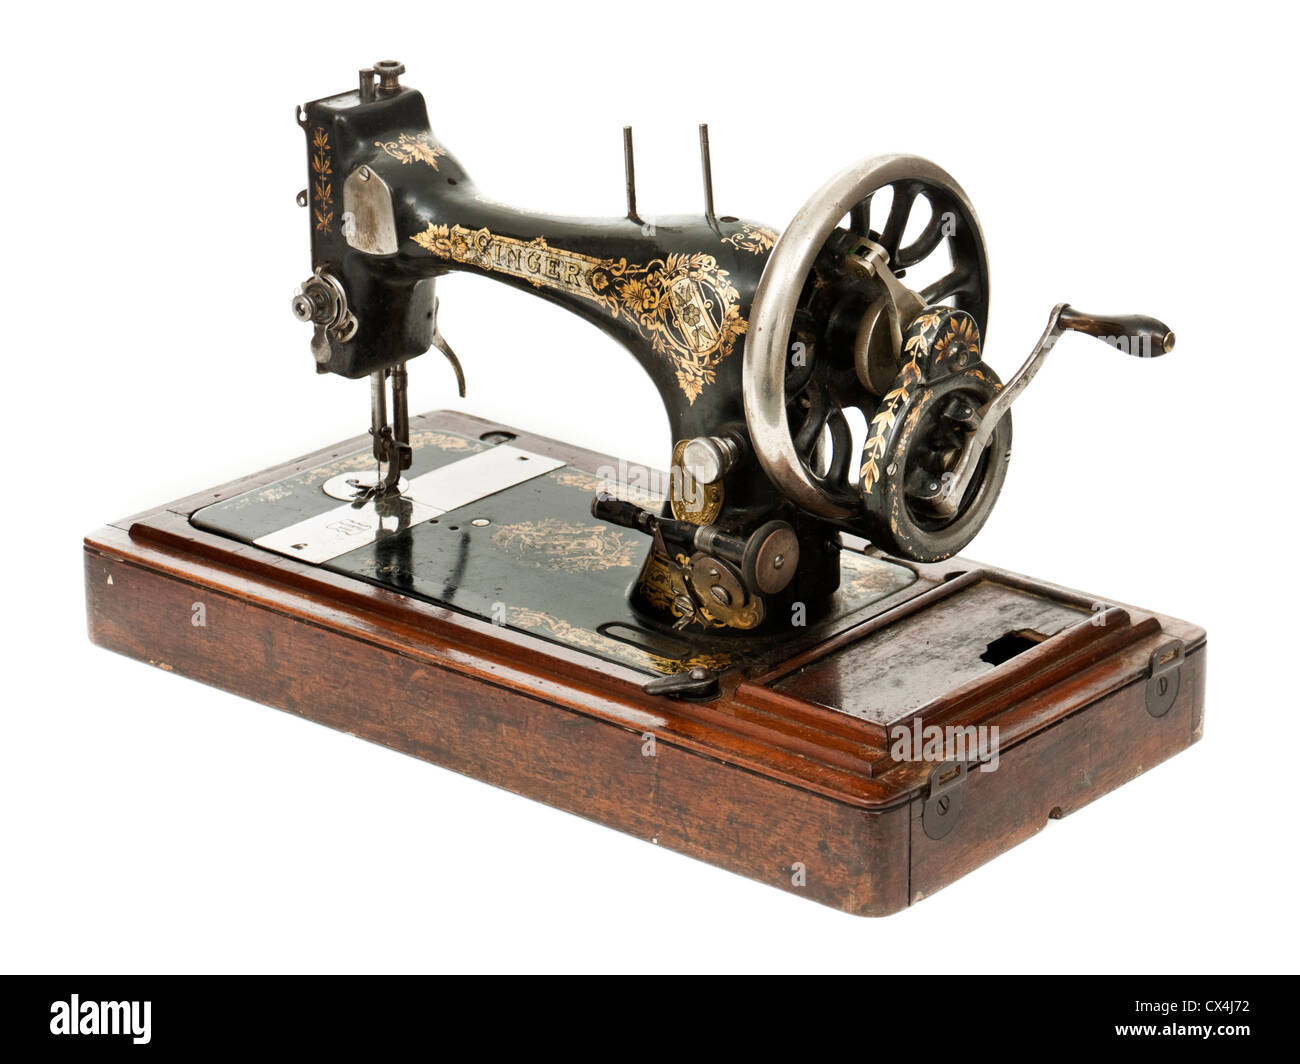 Singer machine à coudre manuelle antique Photo Stock - Alamy